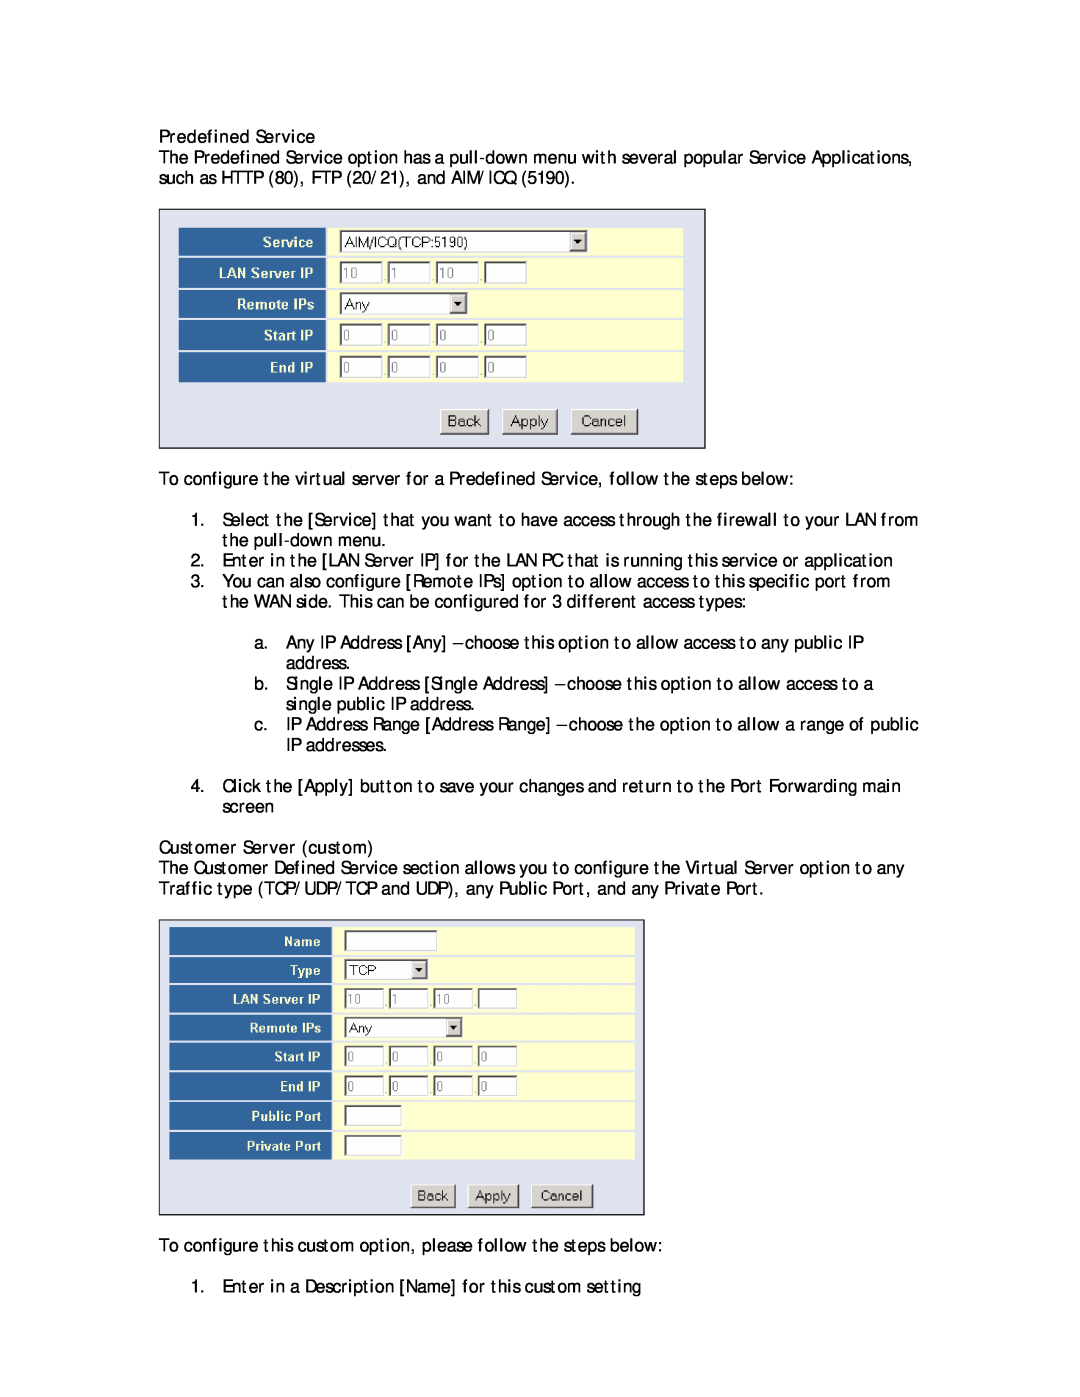 SMC Networks SMC8013WG manual Predefined Service, Customer Server custom 